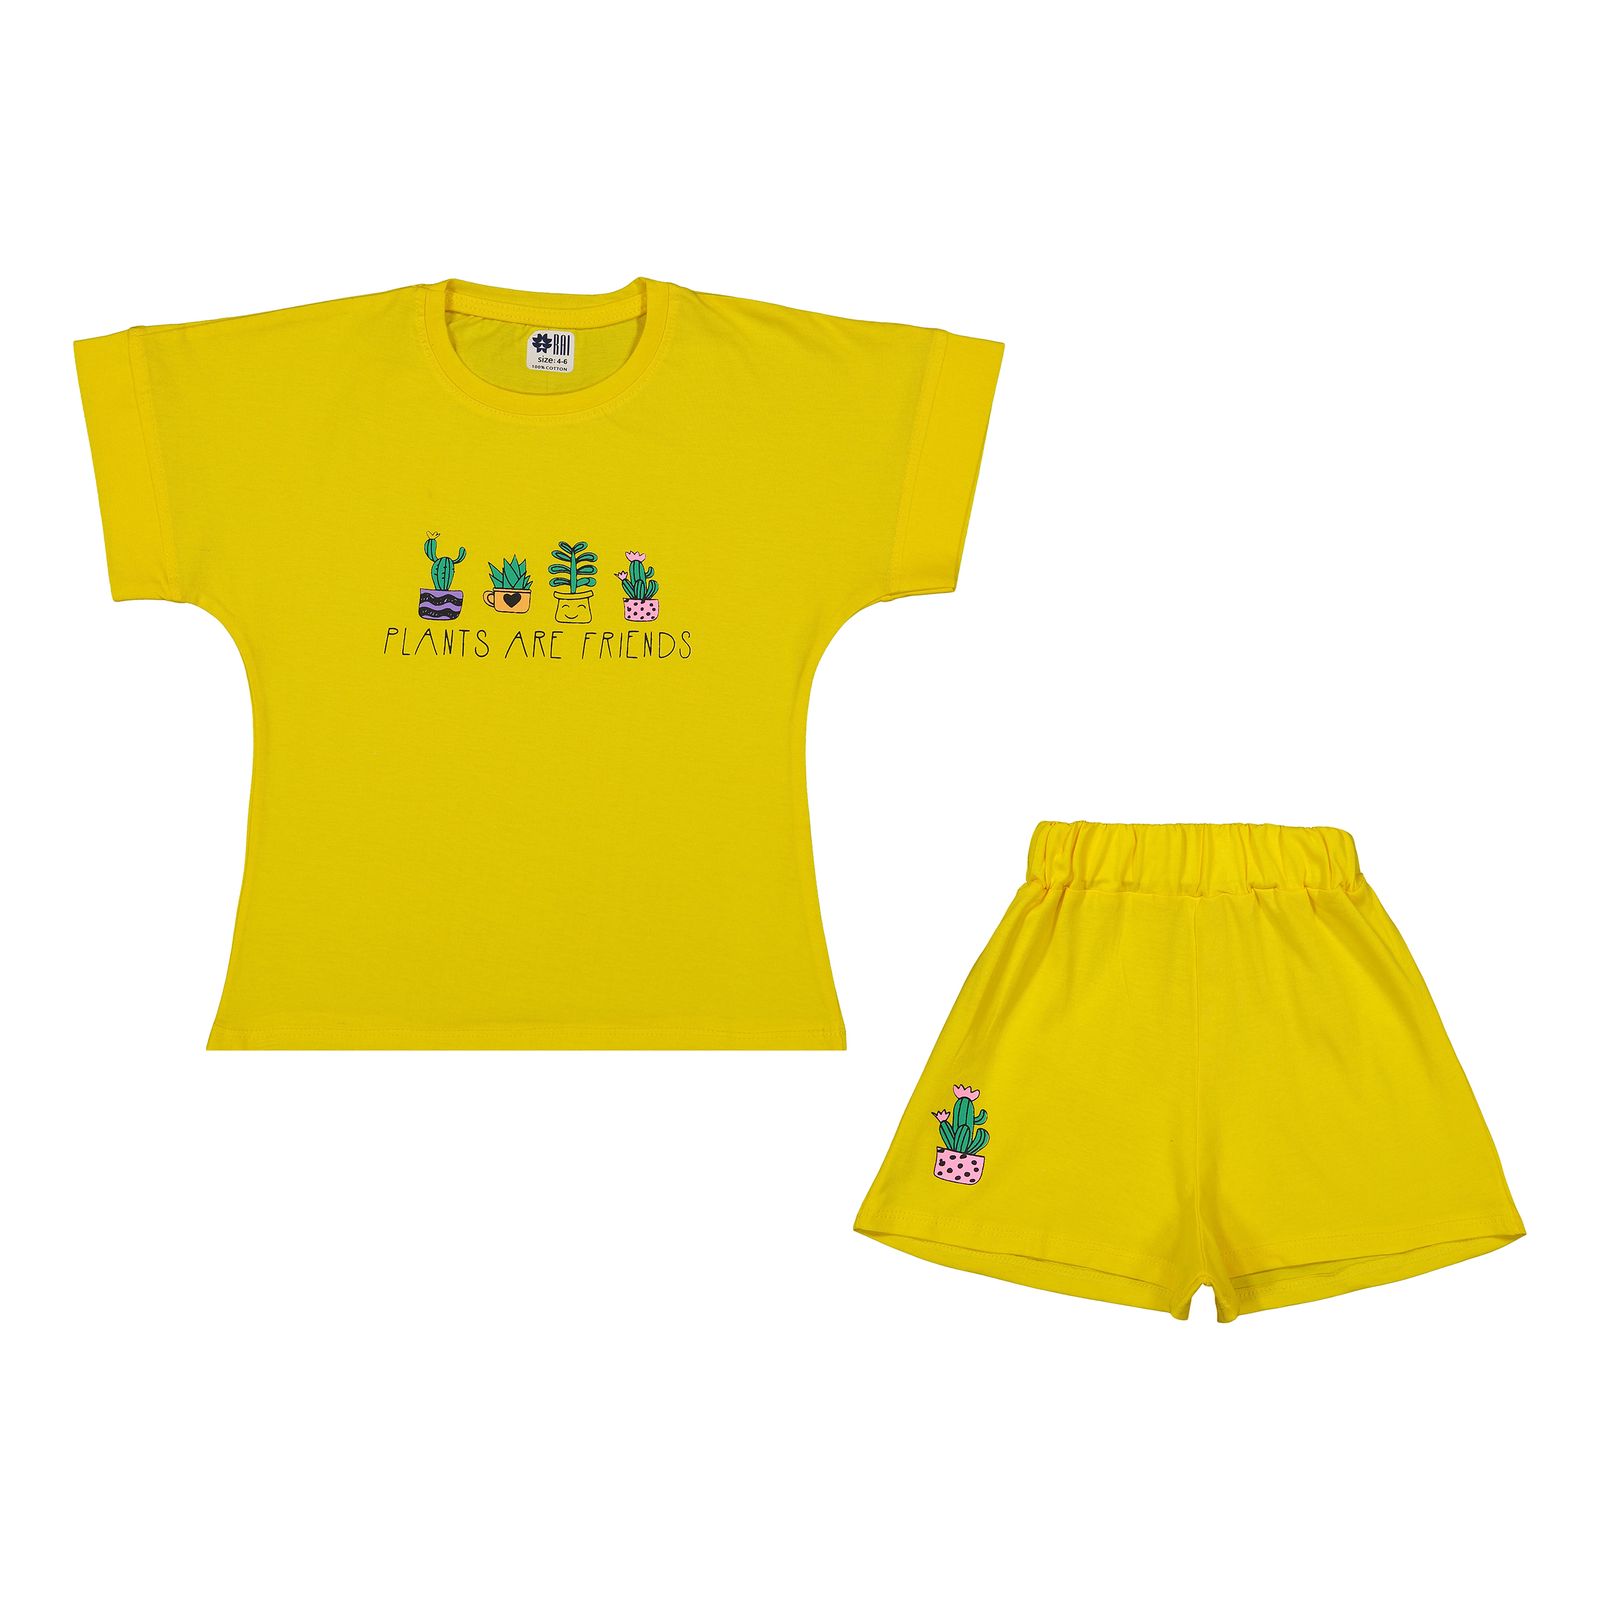 ست تی شرت آستین کوتاه و شلوارک دخترانه مادر مدل گاردن کد 92-16 رنگ زرد -  - 1